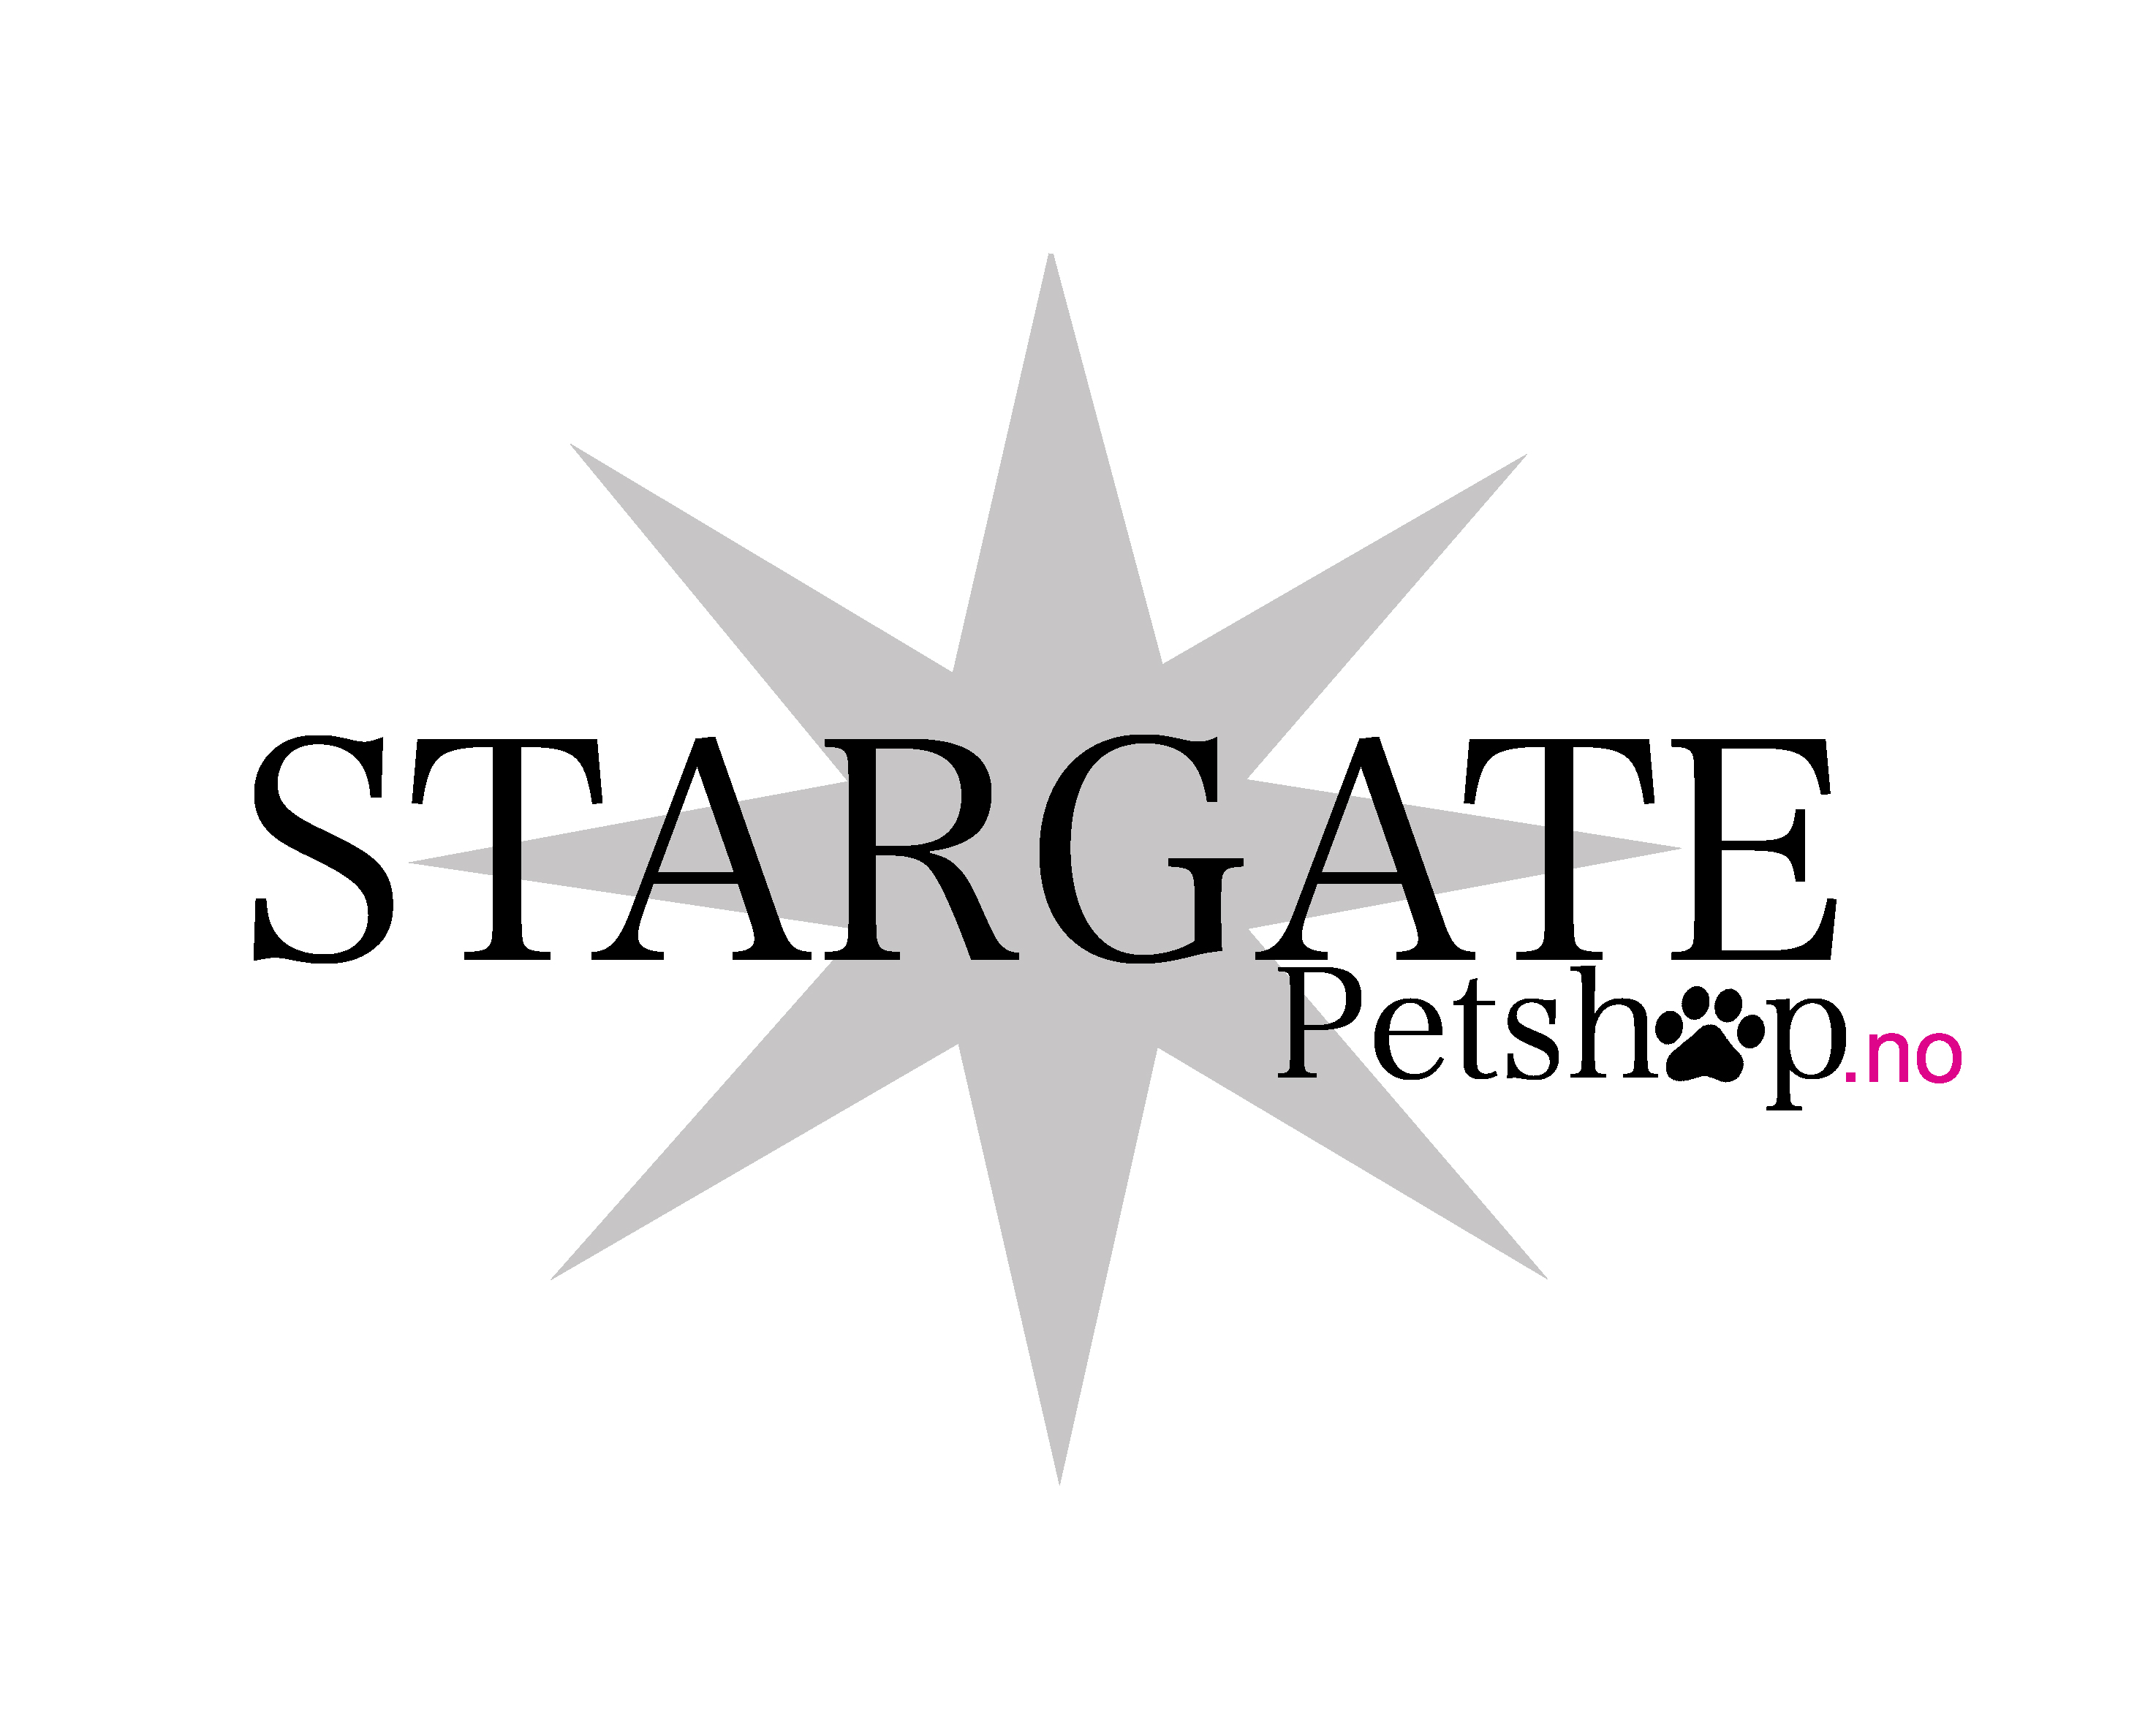 Stargate Petshop